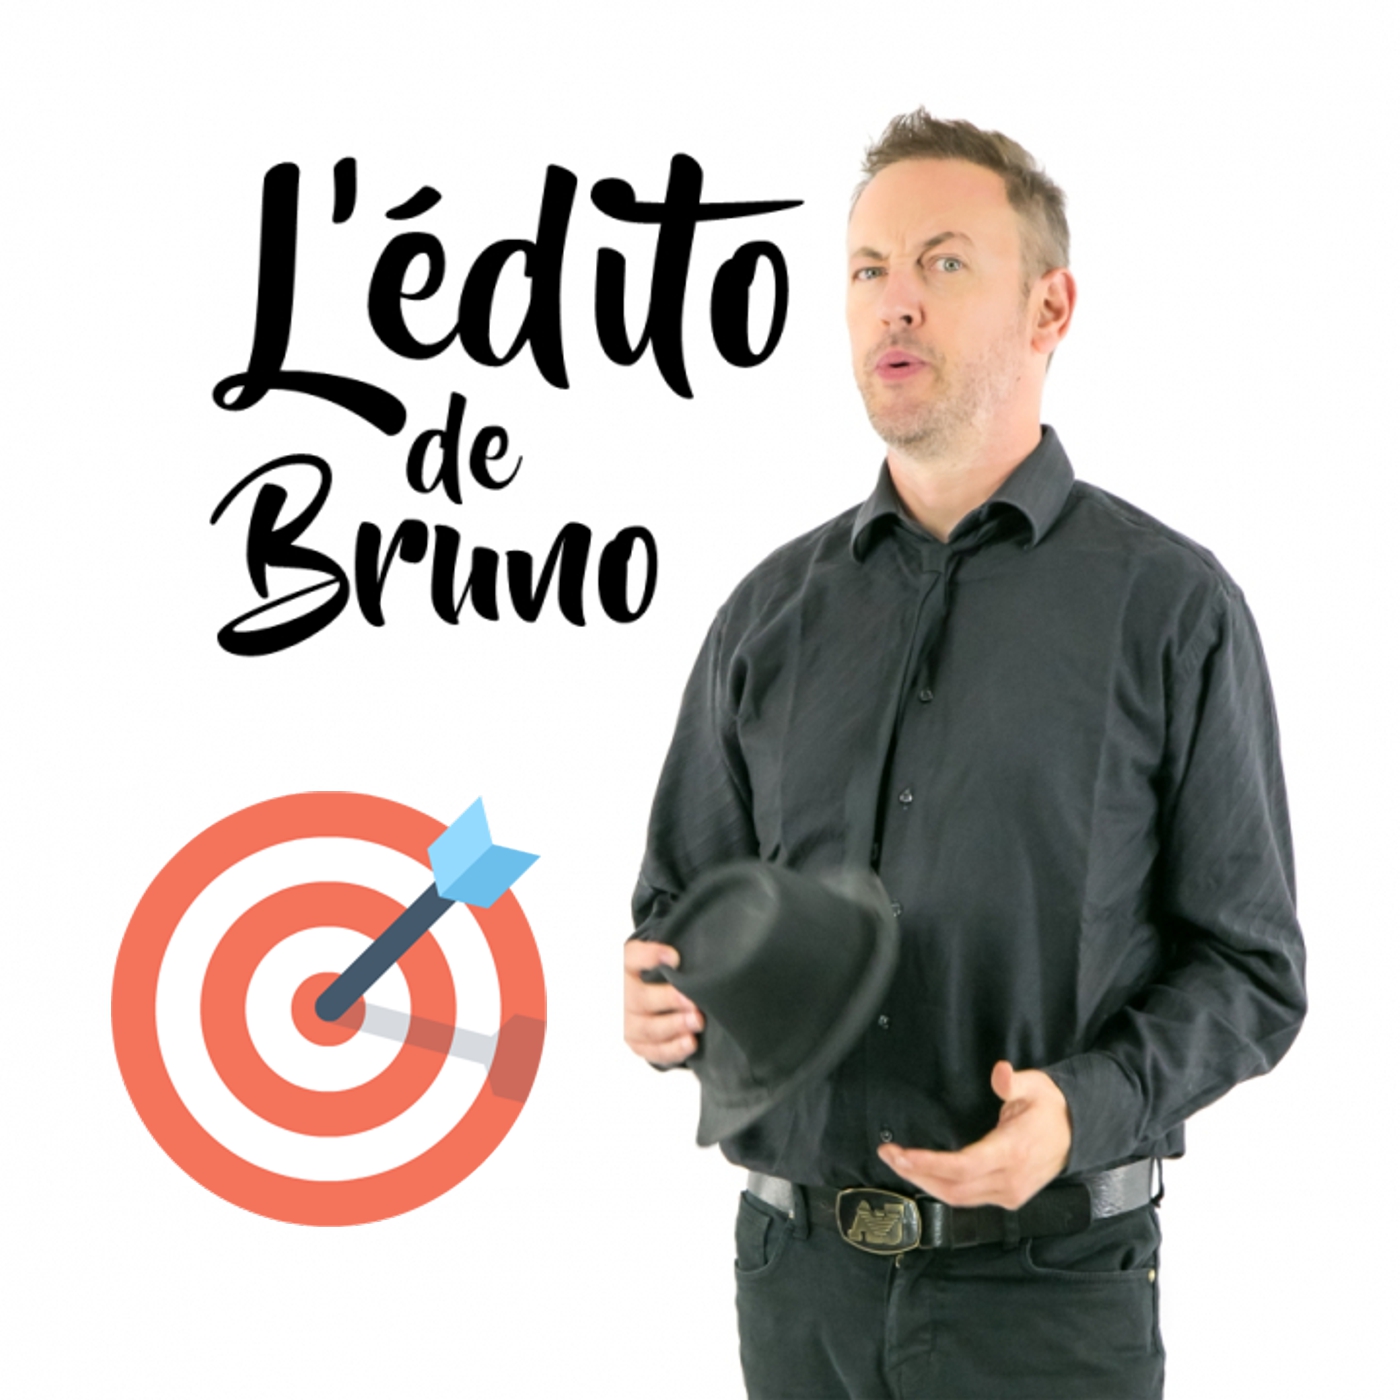 Emission du 03 09 2019 L'édito de Bruno de l'émission Tendance à m'plaire sur Radio G! Emission du 03 09 2019